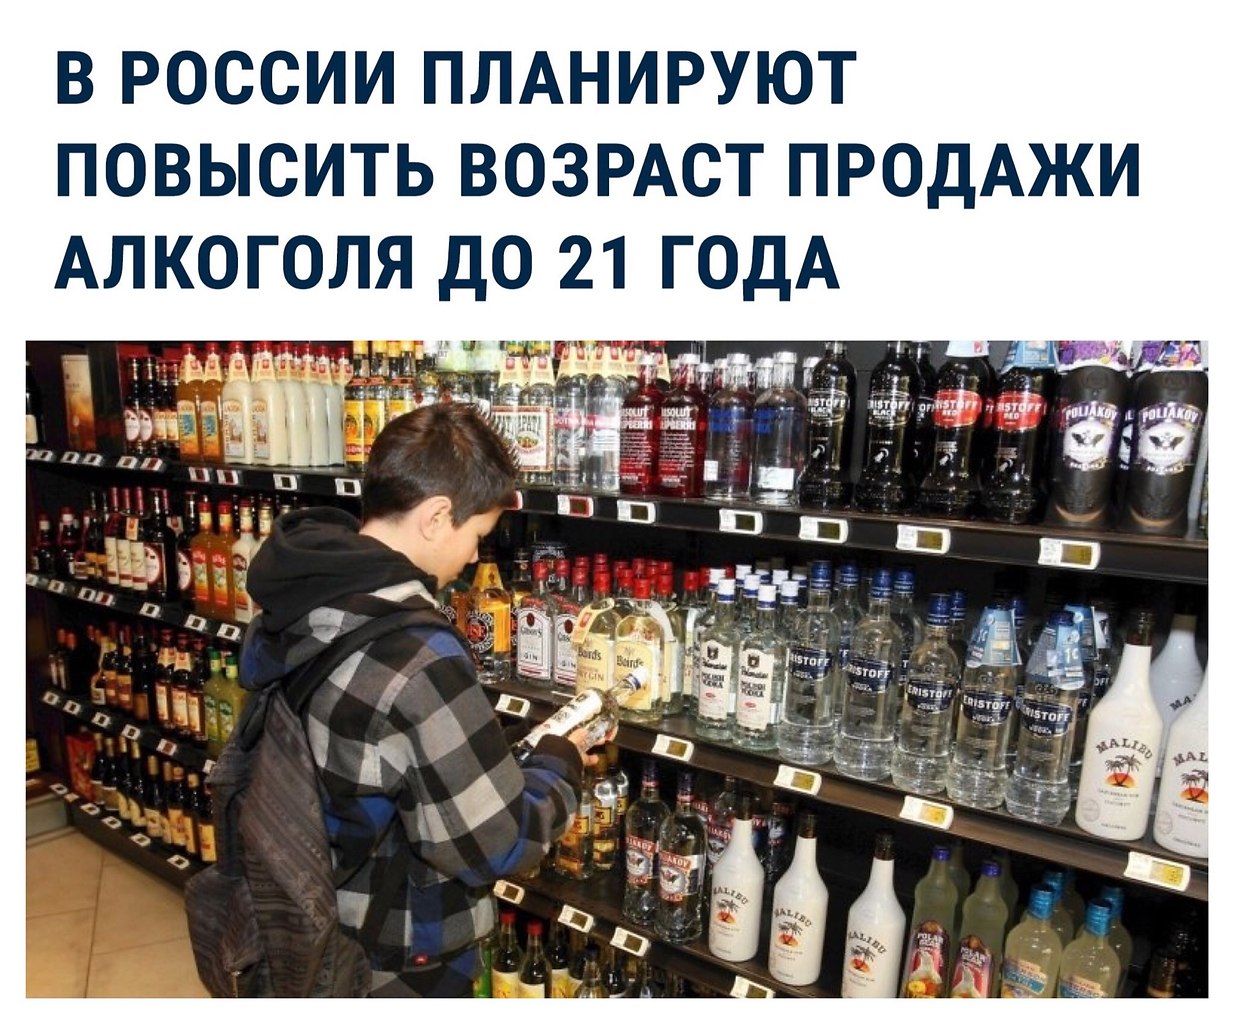 Со скольки лет продают электронную. Со скольки продают алкоголь. С какого возраста продают алкоголь. Скакого возраста продевается алкоголь.